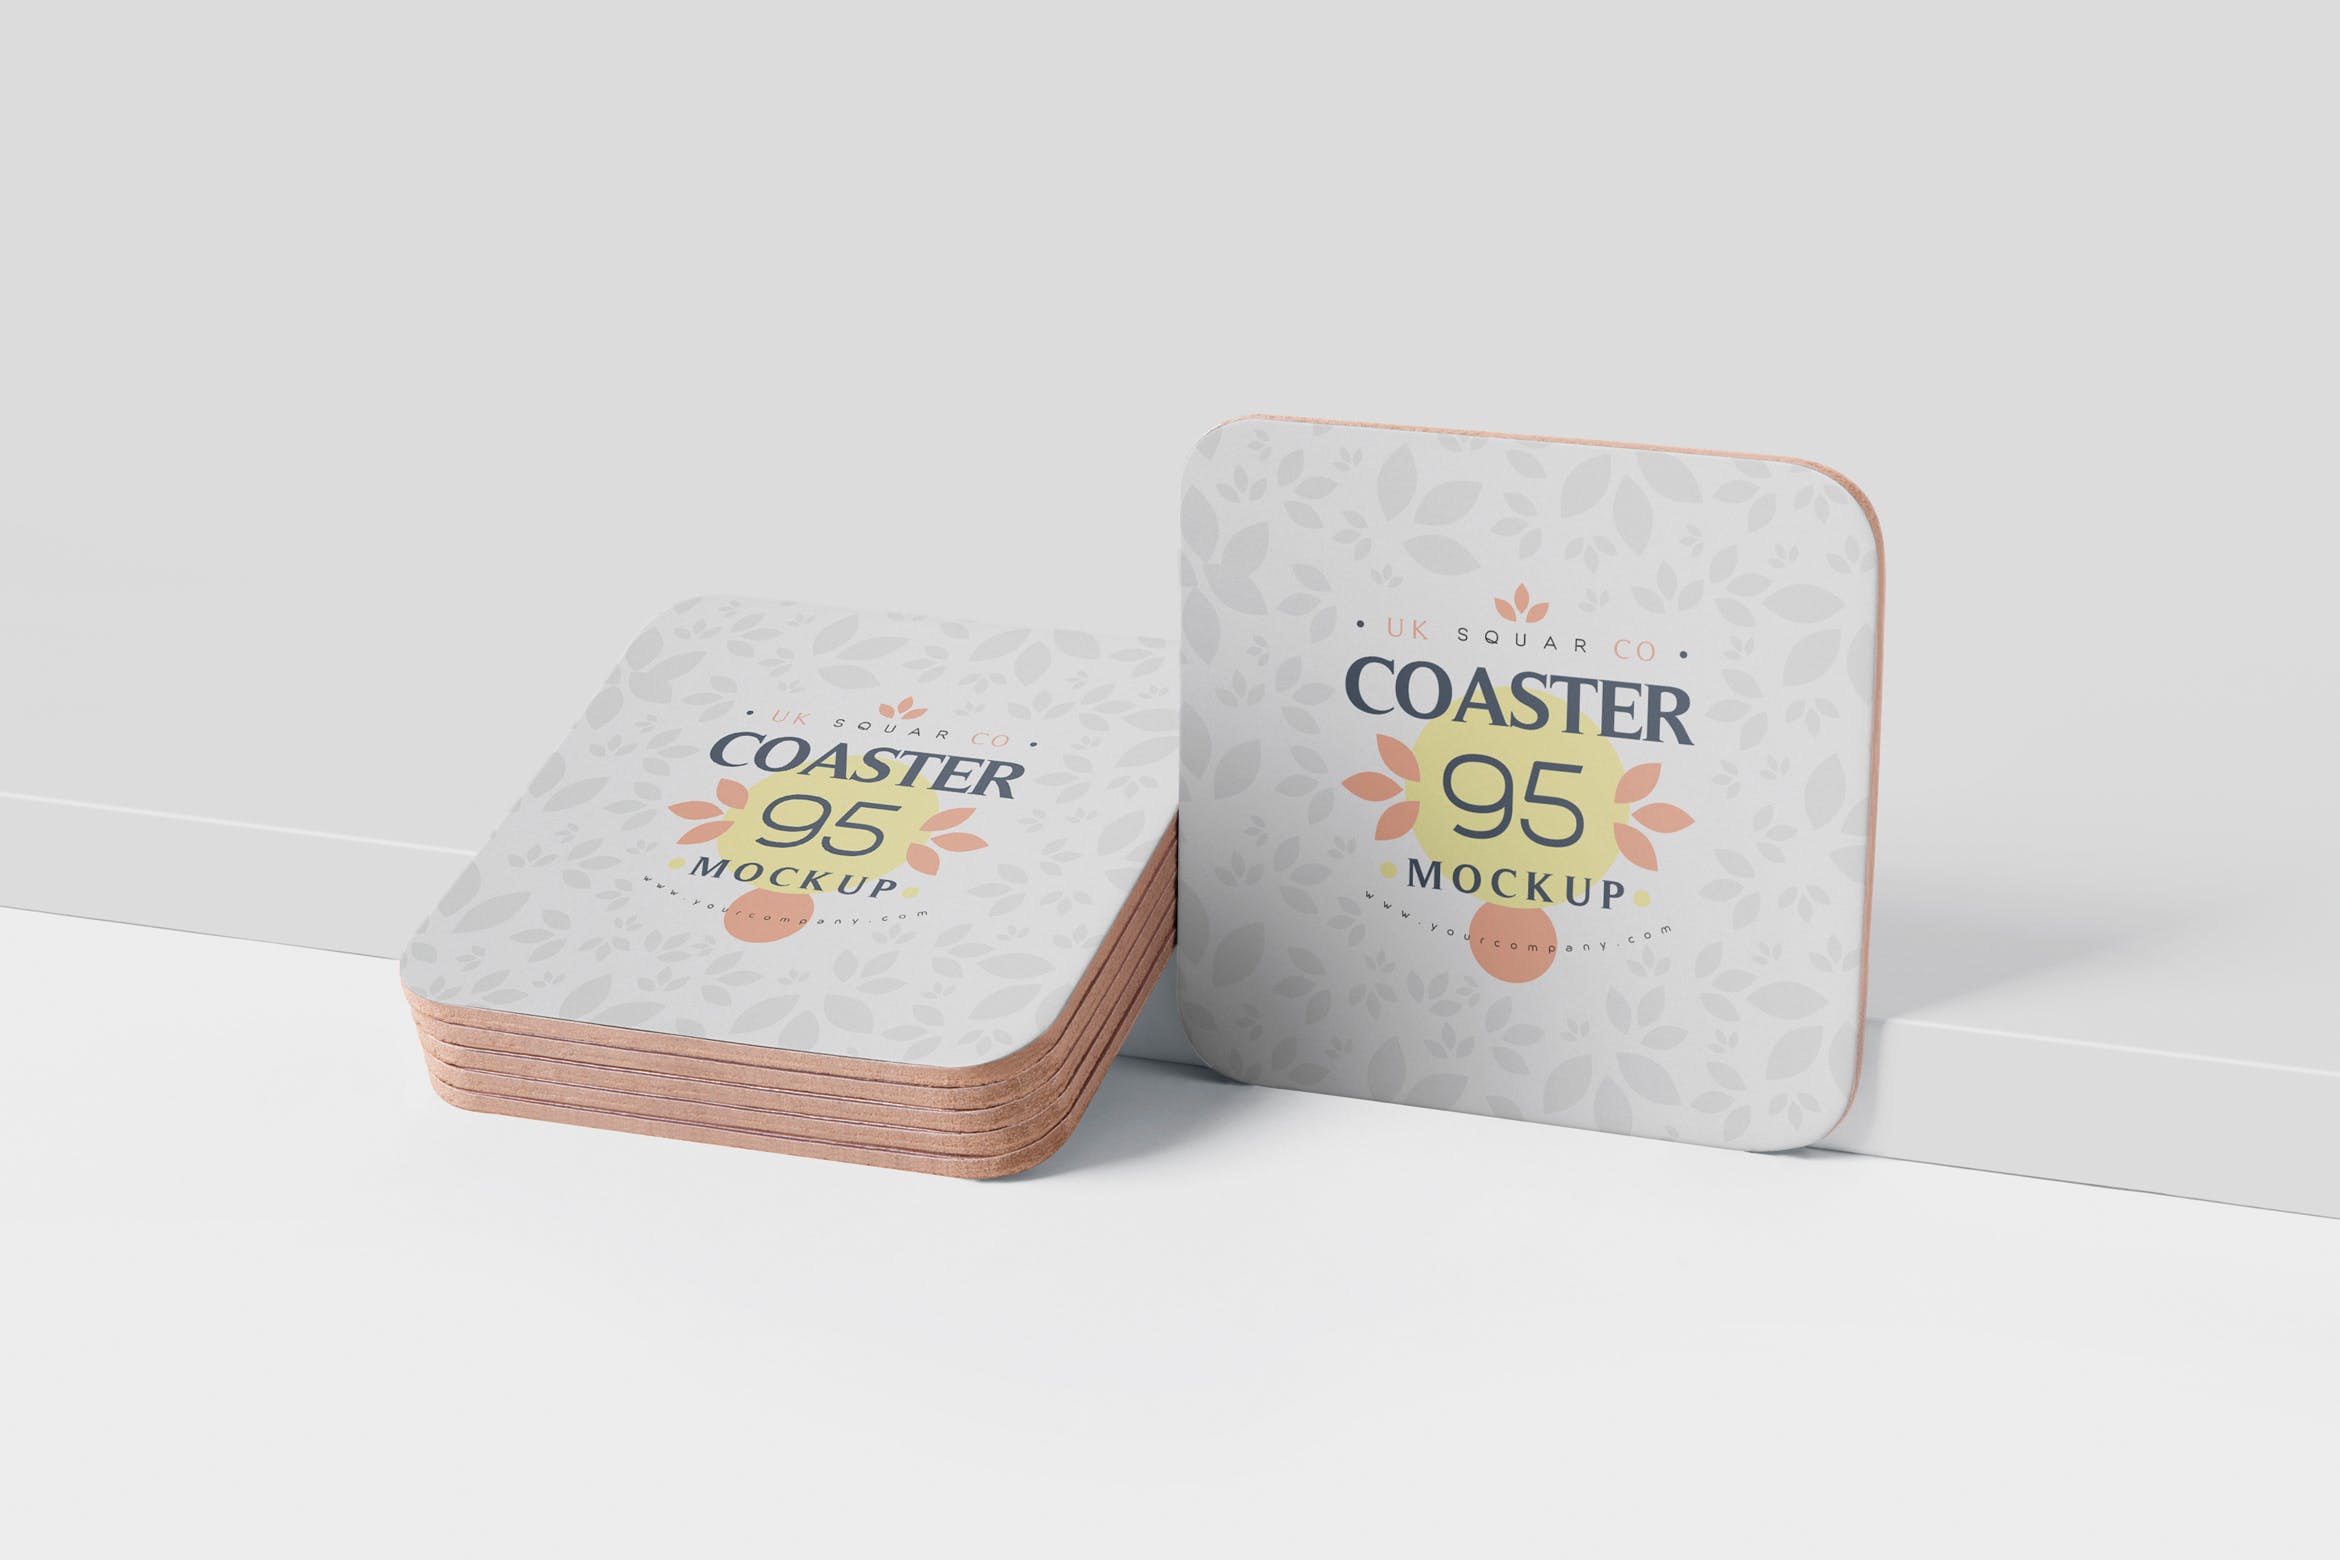 圆角方形杯垫图案设计素材库精选模板 Square Coaster Mock-Up with Round Corner插图